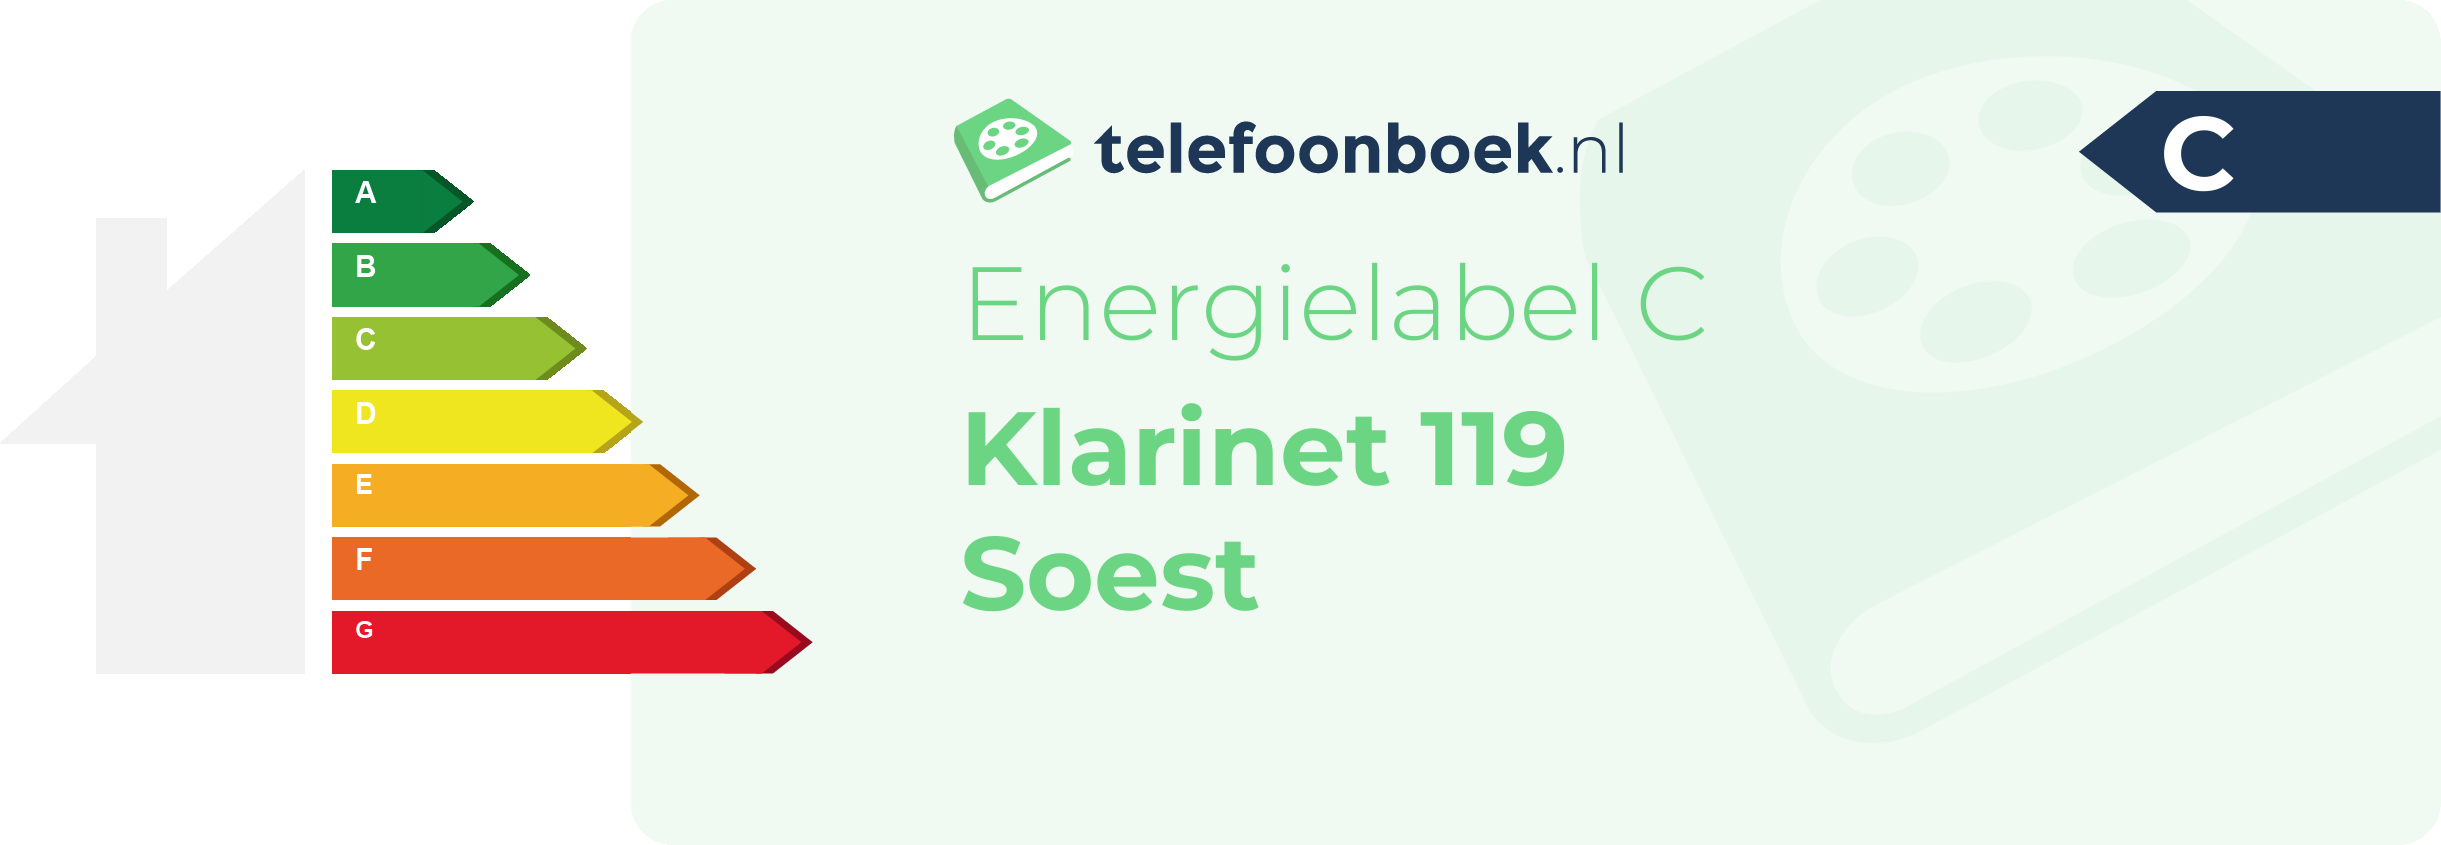 Energielabel Klarinet 119 Soest